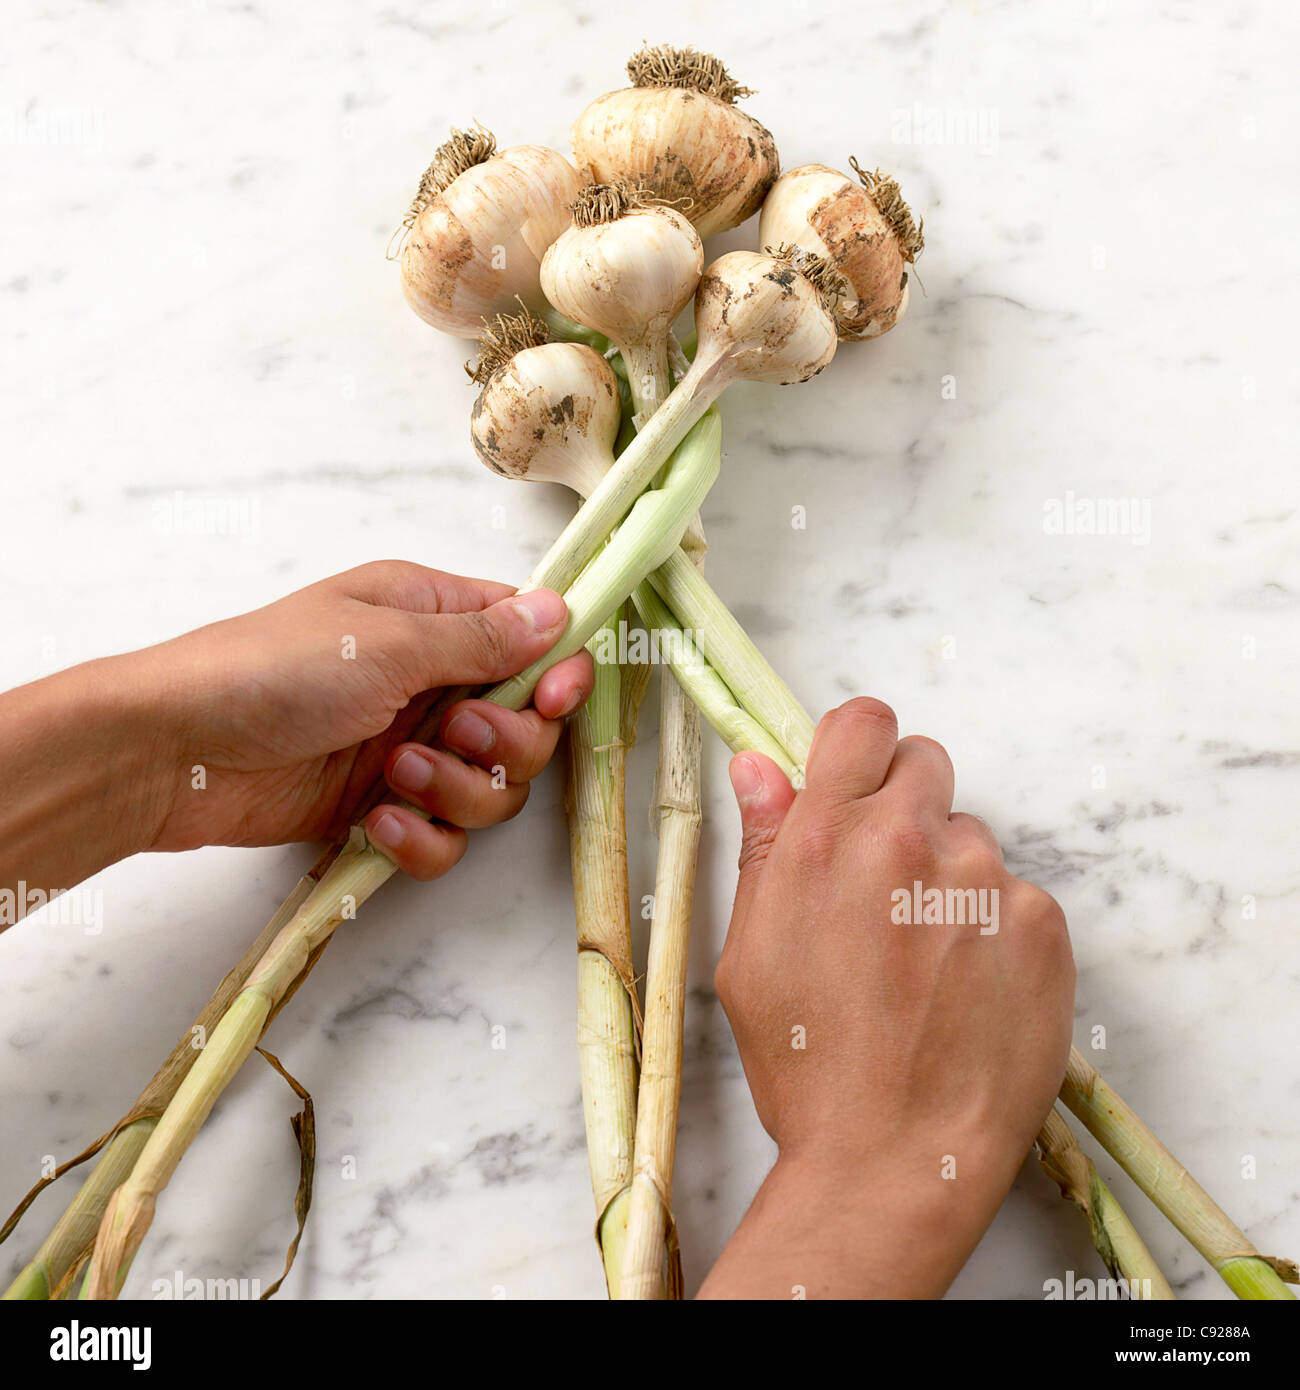 Making garlic plait Stock Photo